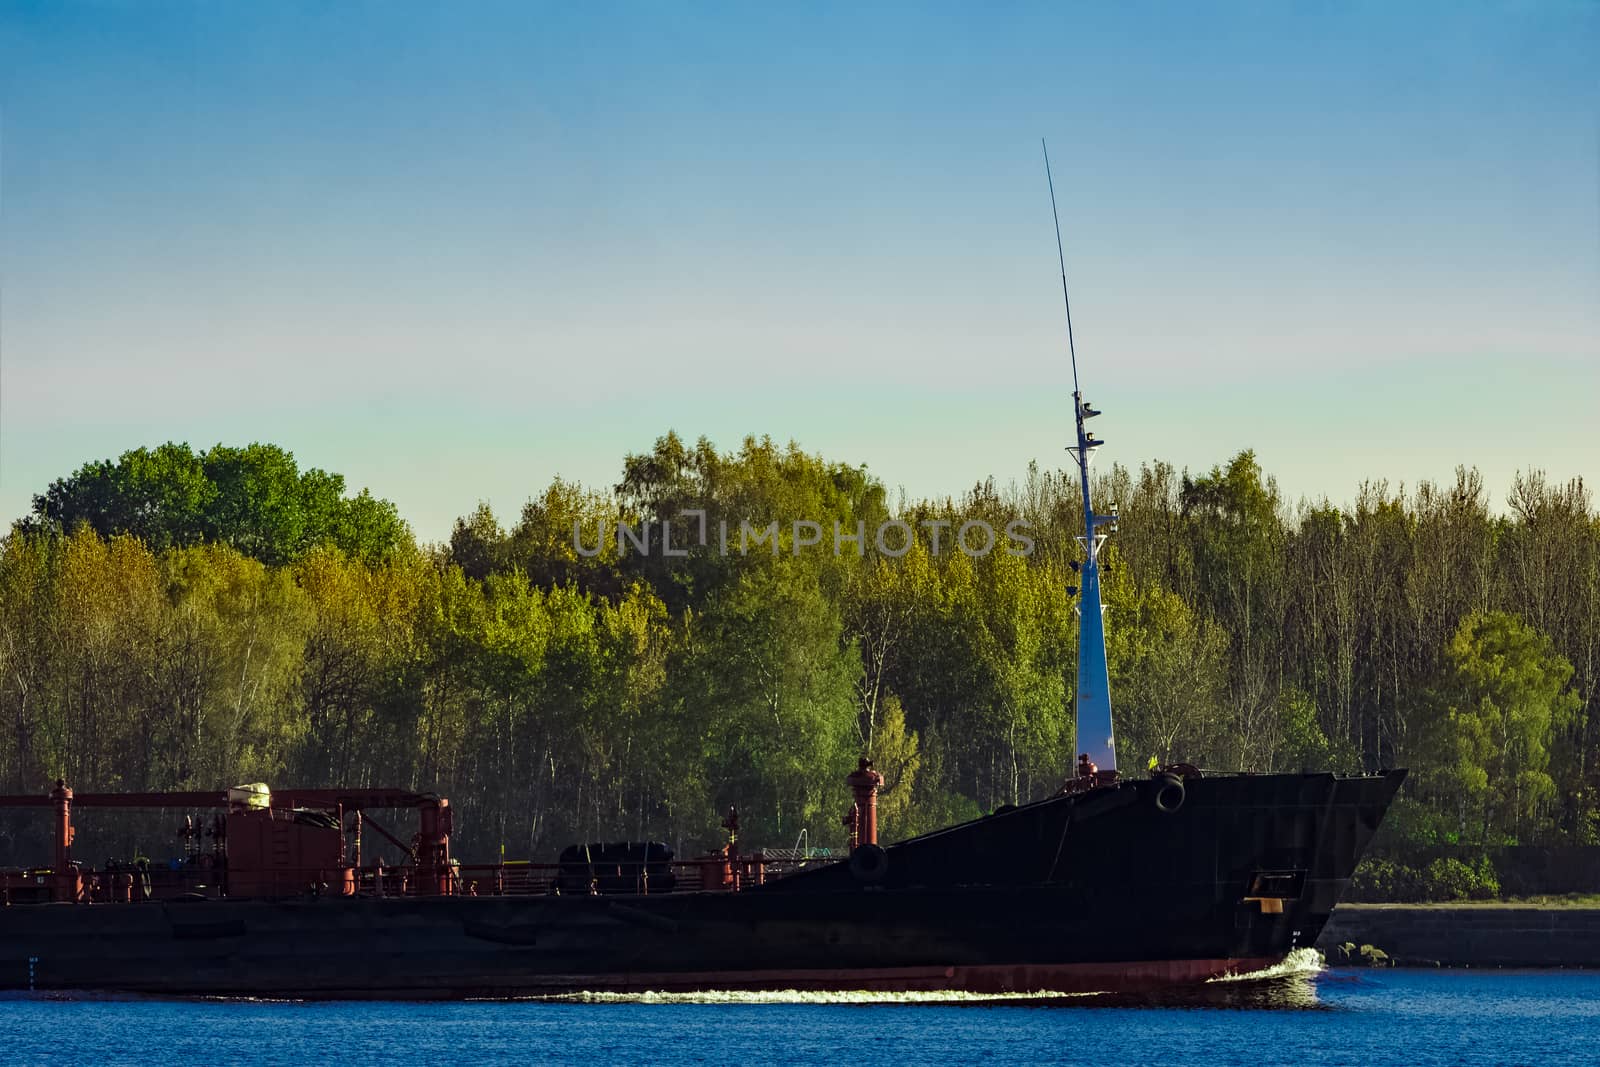 Black cargo oil tanker's bow against summer green trees